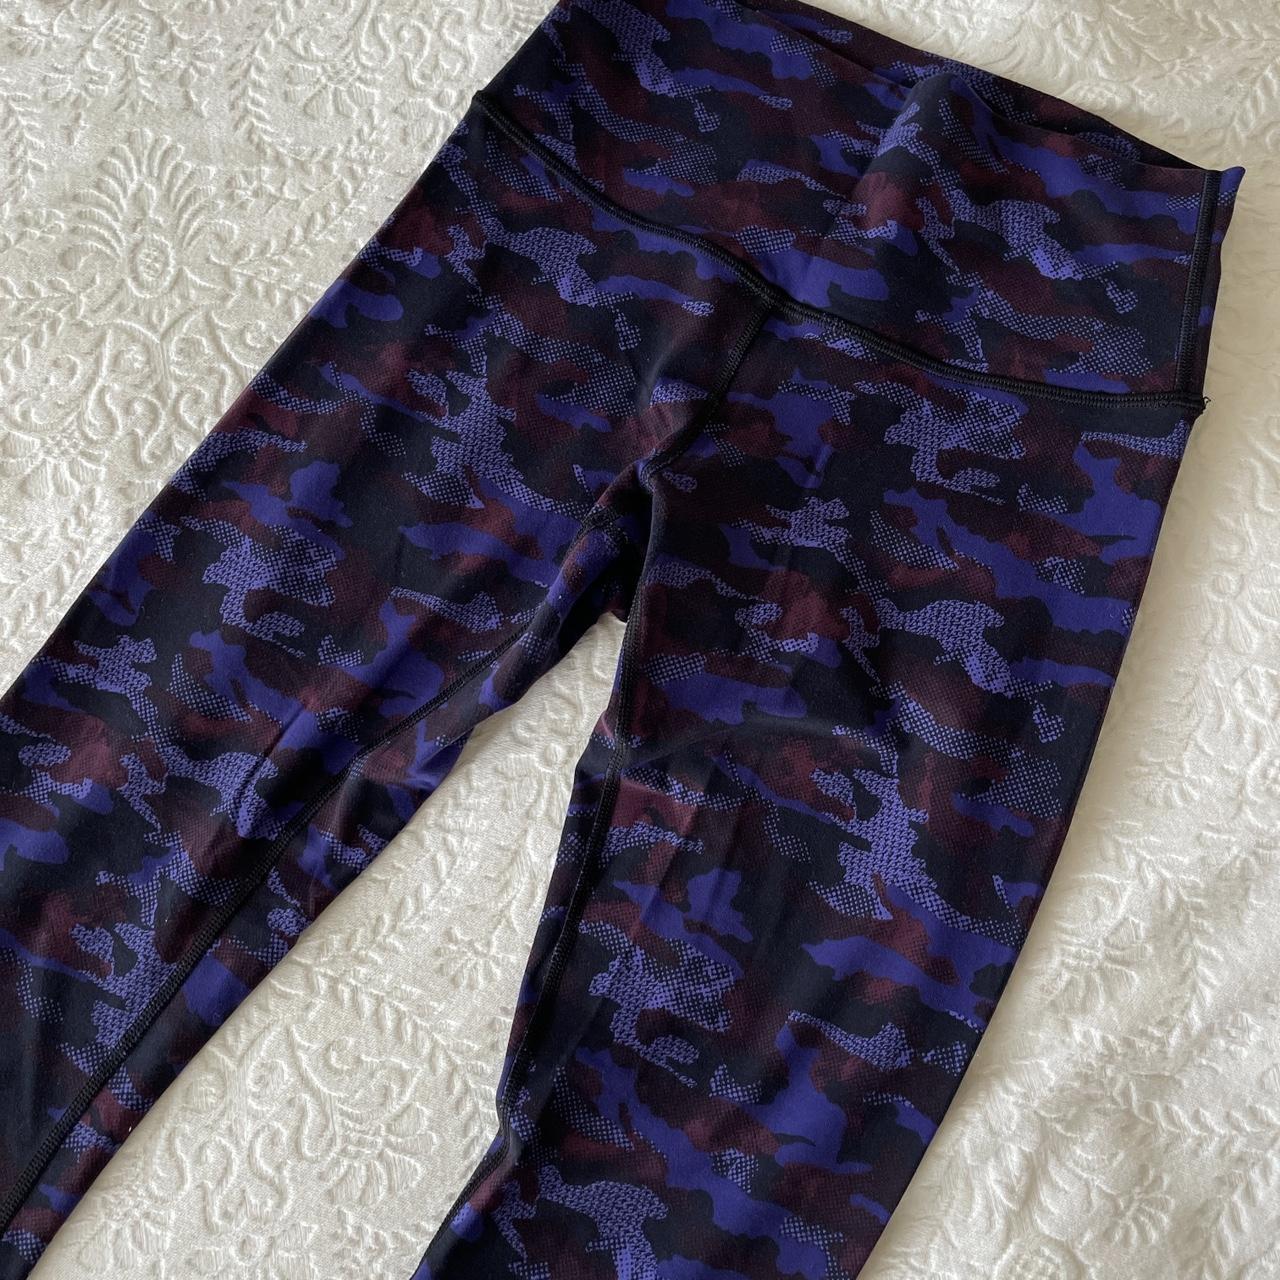 lululemon purple flare leggings size 2 only worn - Depop